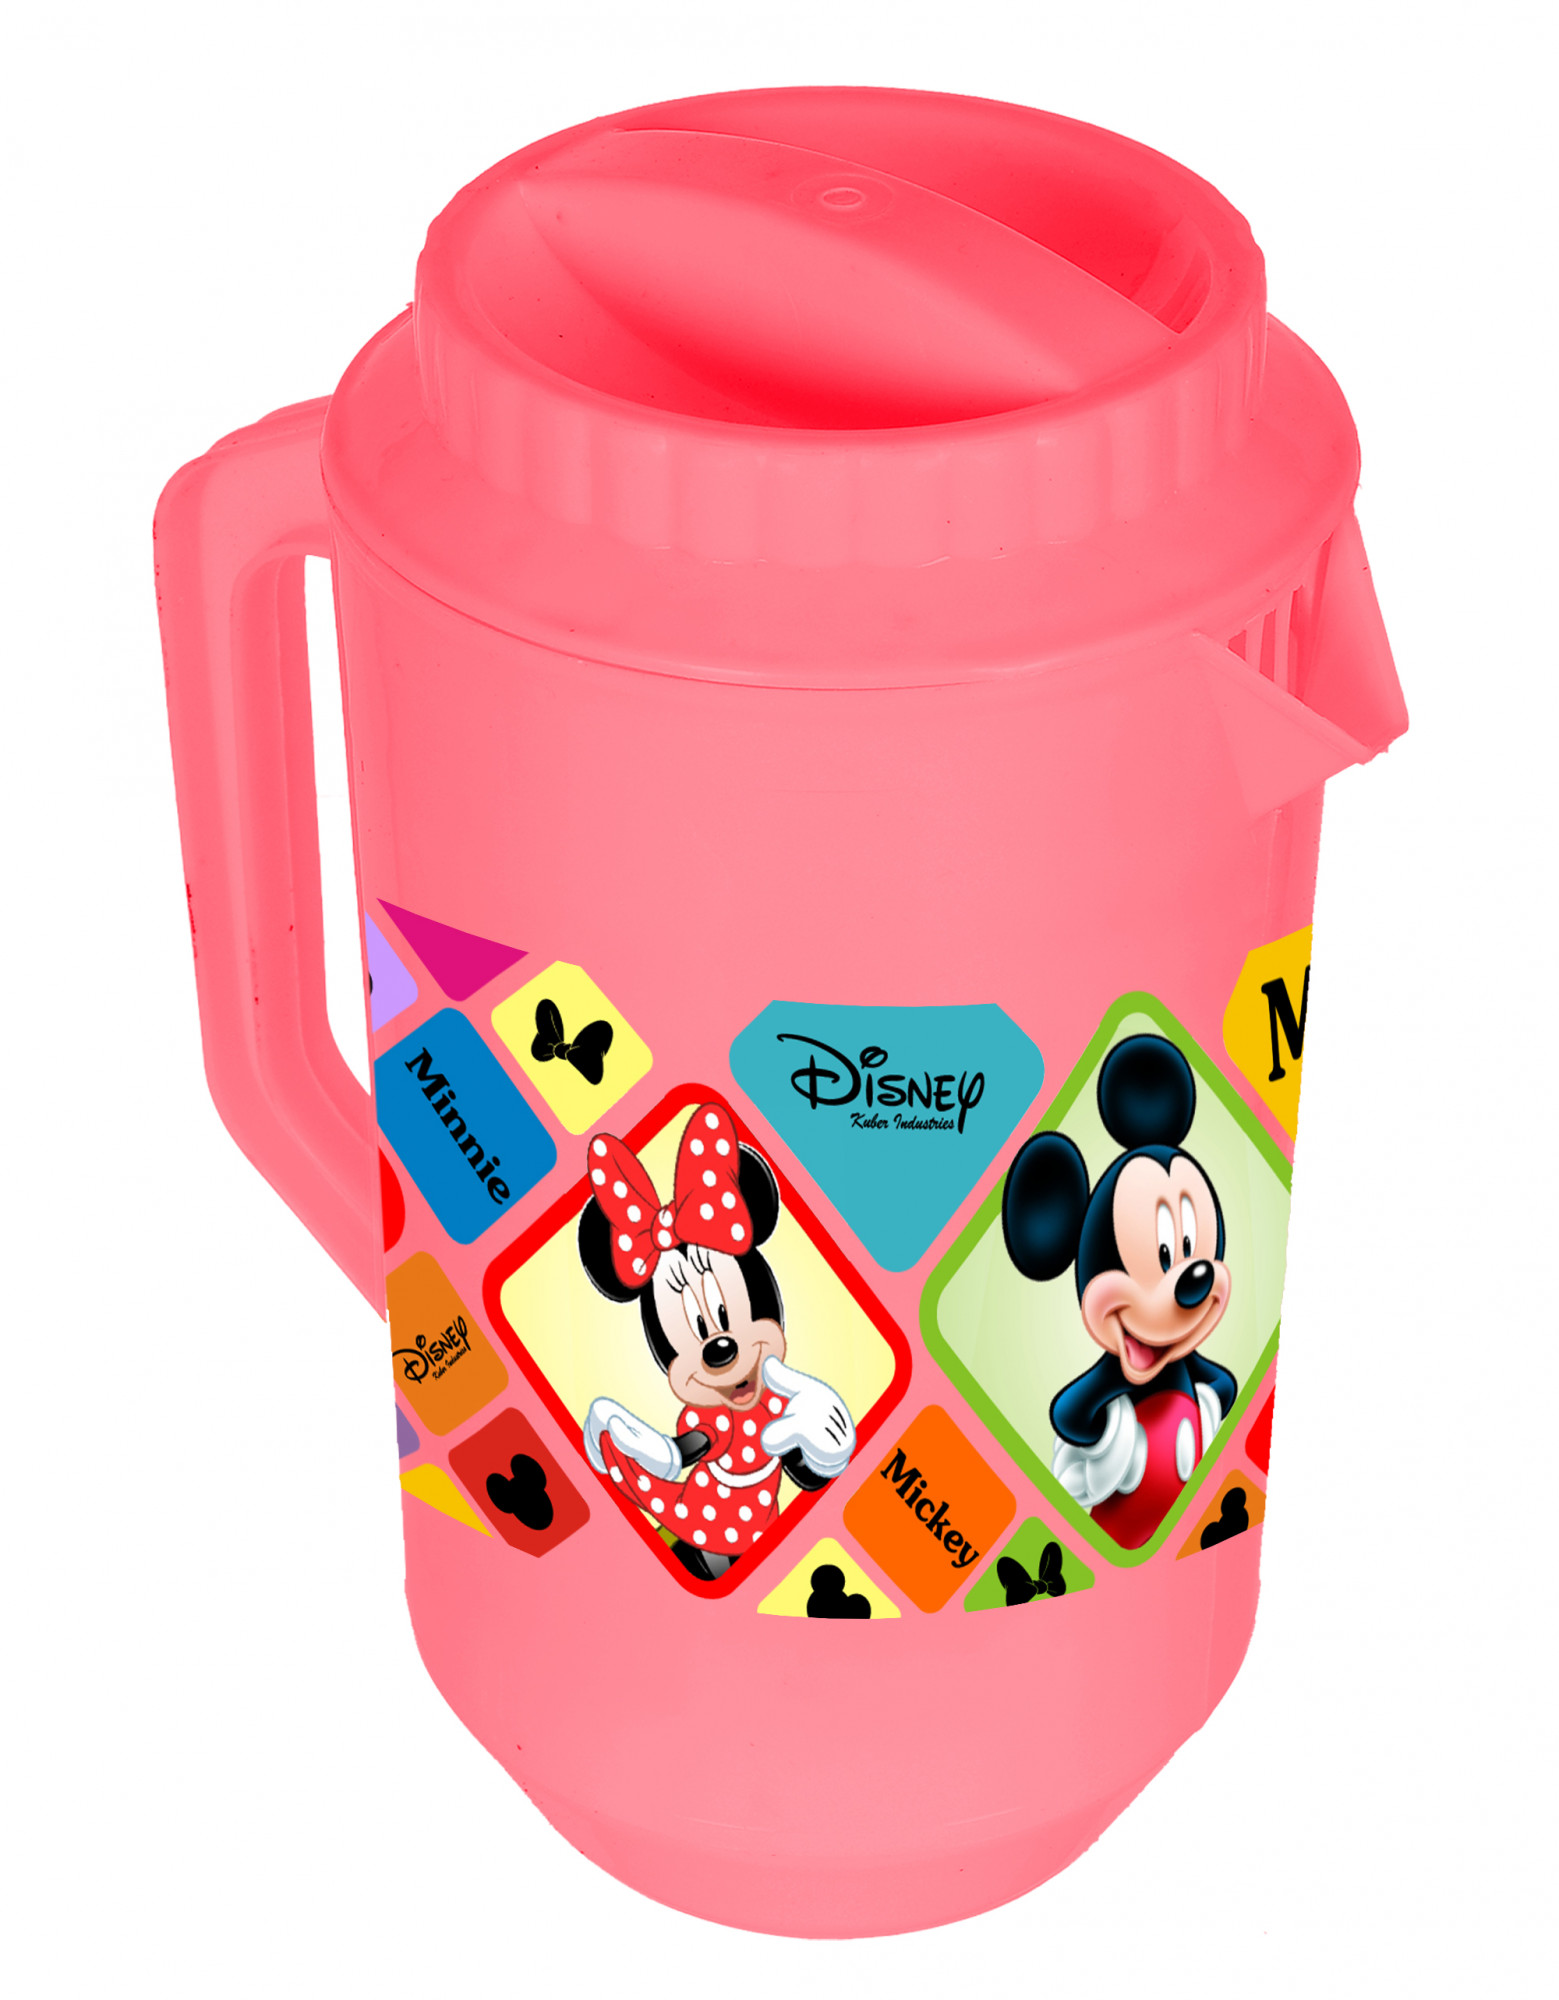 Kuber Industries Disney Mickey Minnie Print Unbreakable Multipurpose Plastic Water & Juice Jug With Lid,2 Ltr (Set Of 2, Pink & Blue)